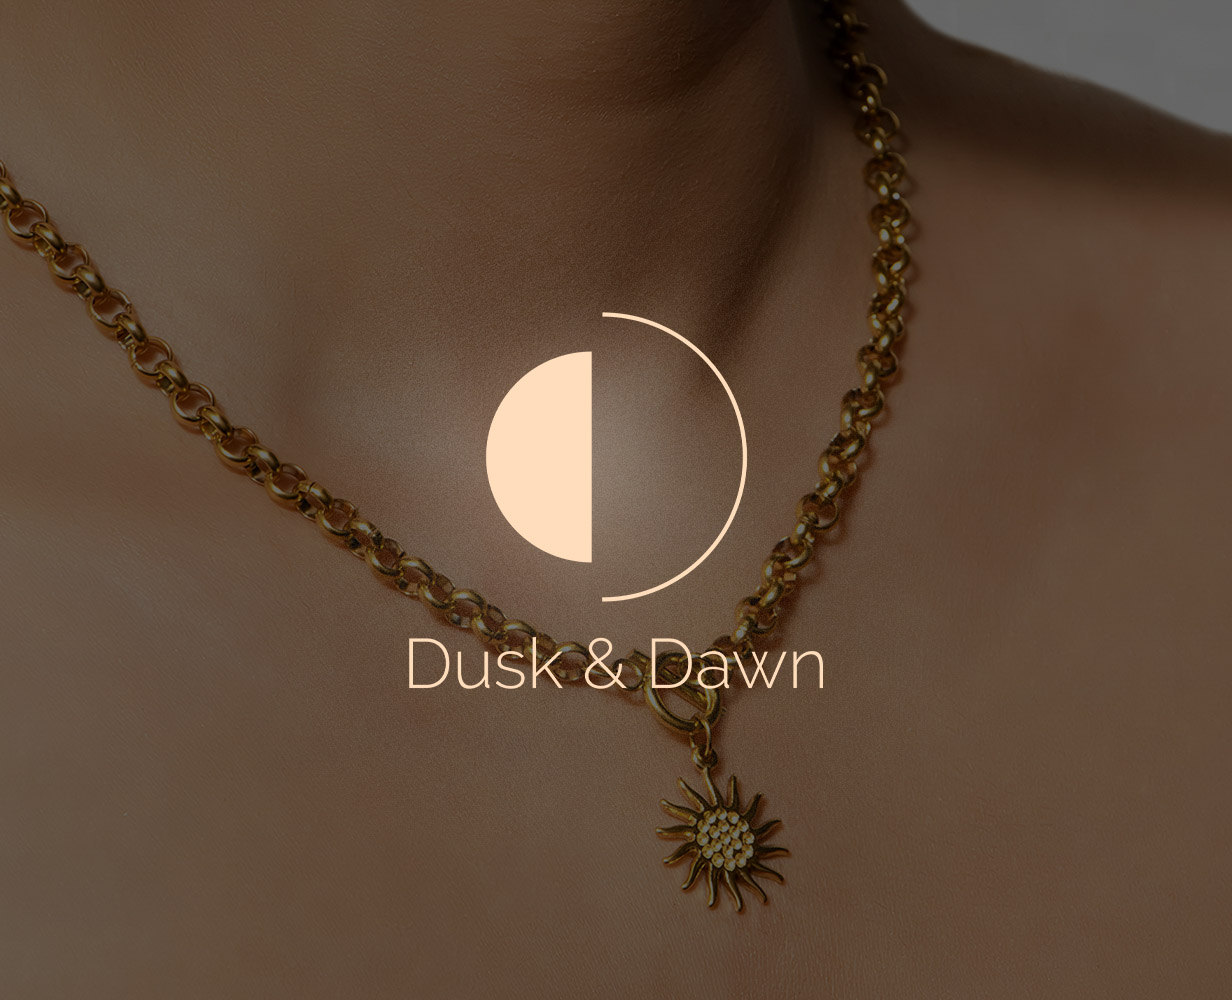 Dusk & dawn - SEO Work Done By Agadh